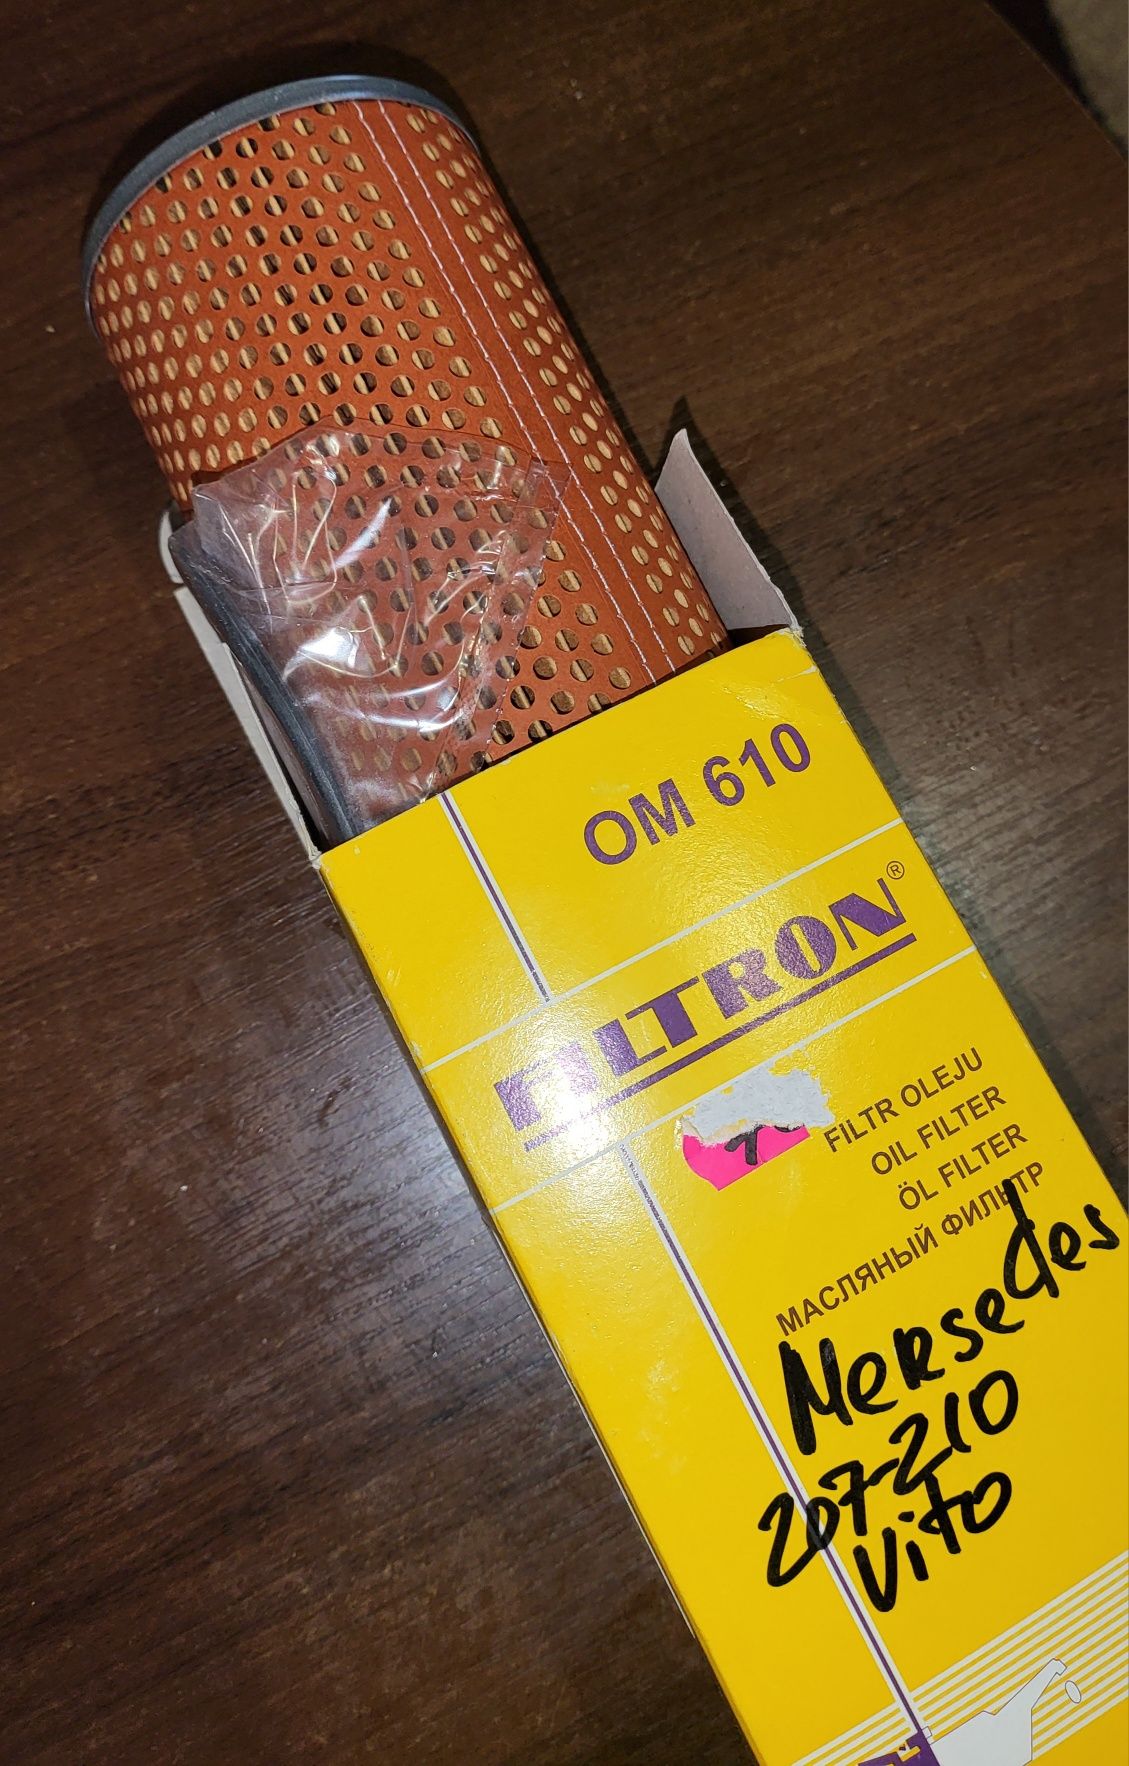 фильтр масла Filtron OM610